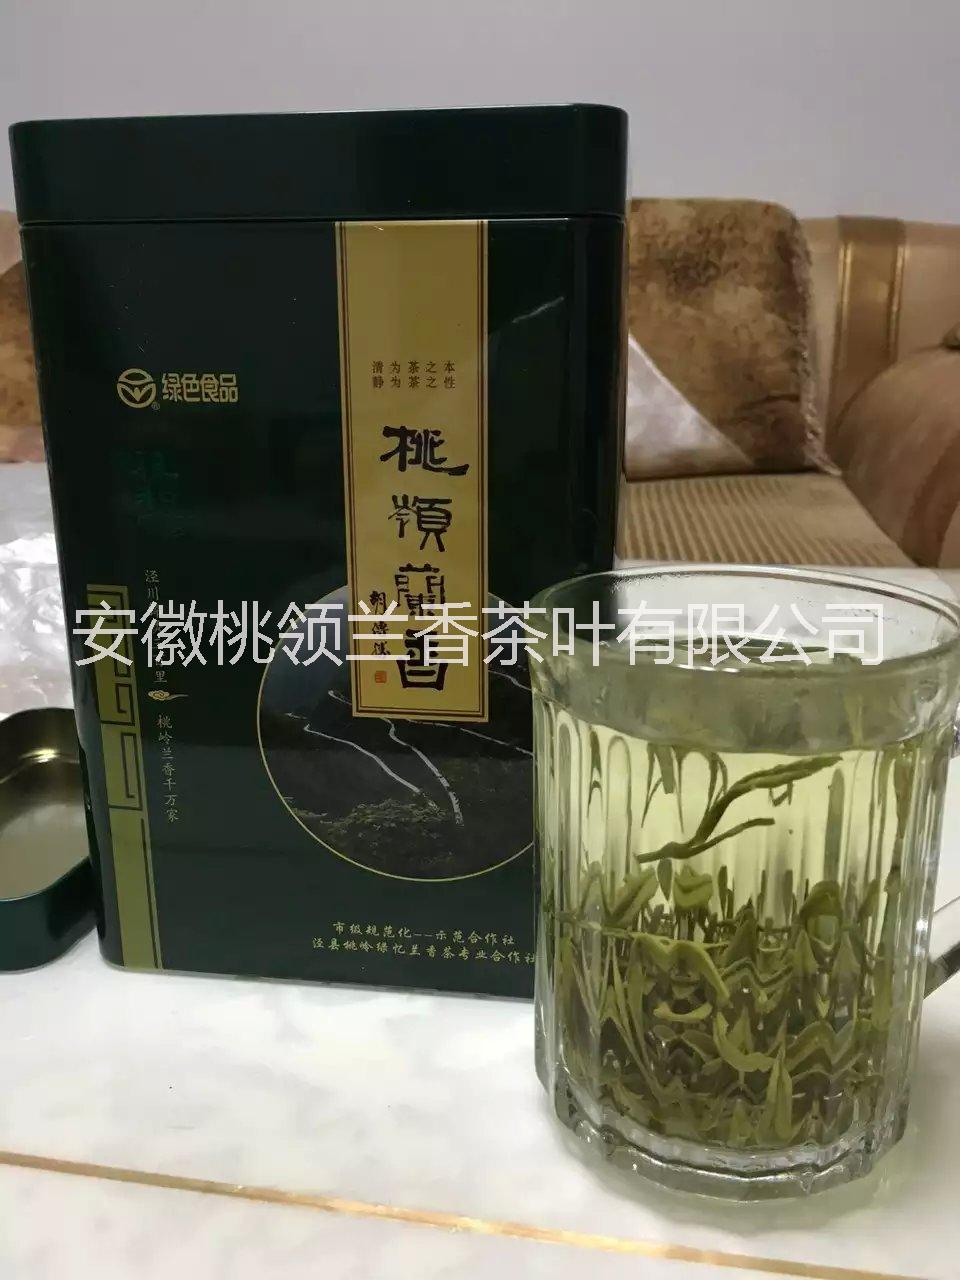 桃领兰香高山绿茶 茶叶 人工采摘批发